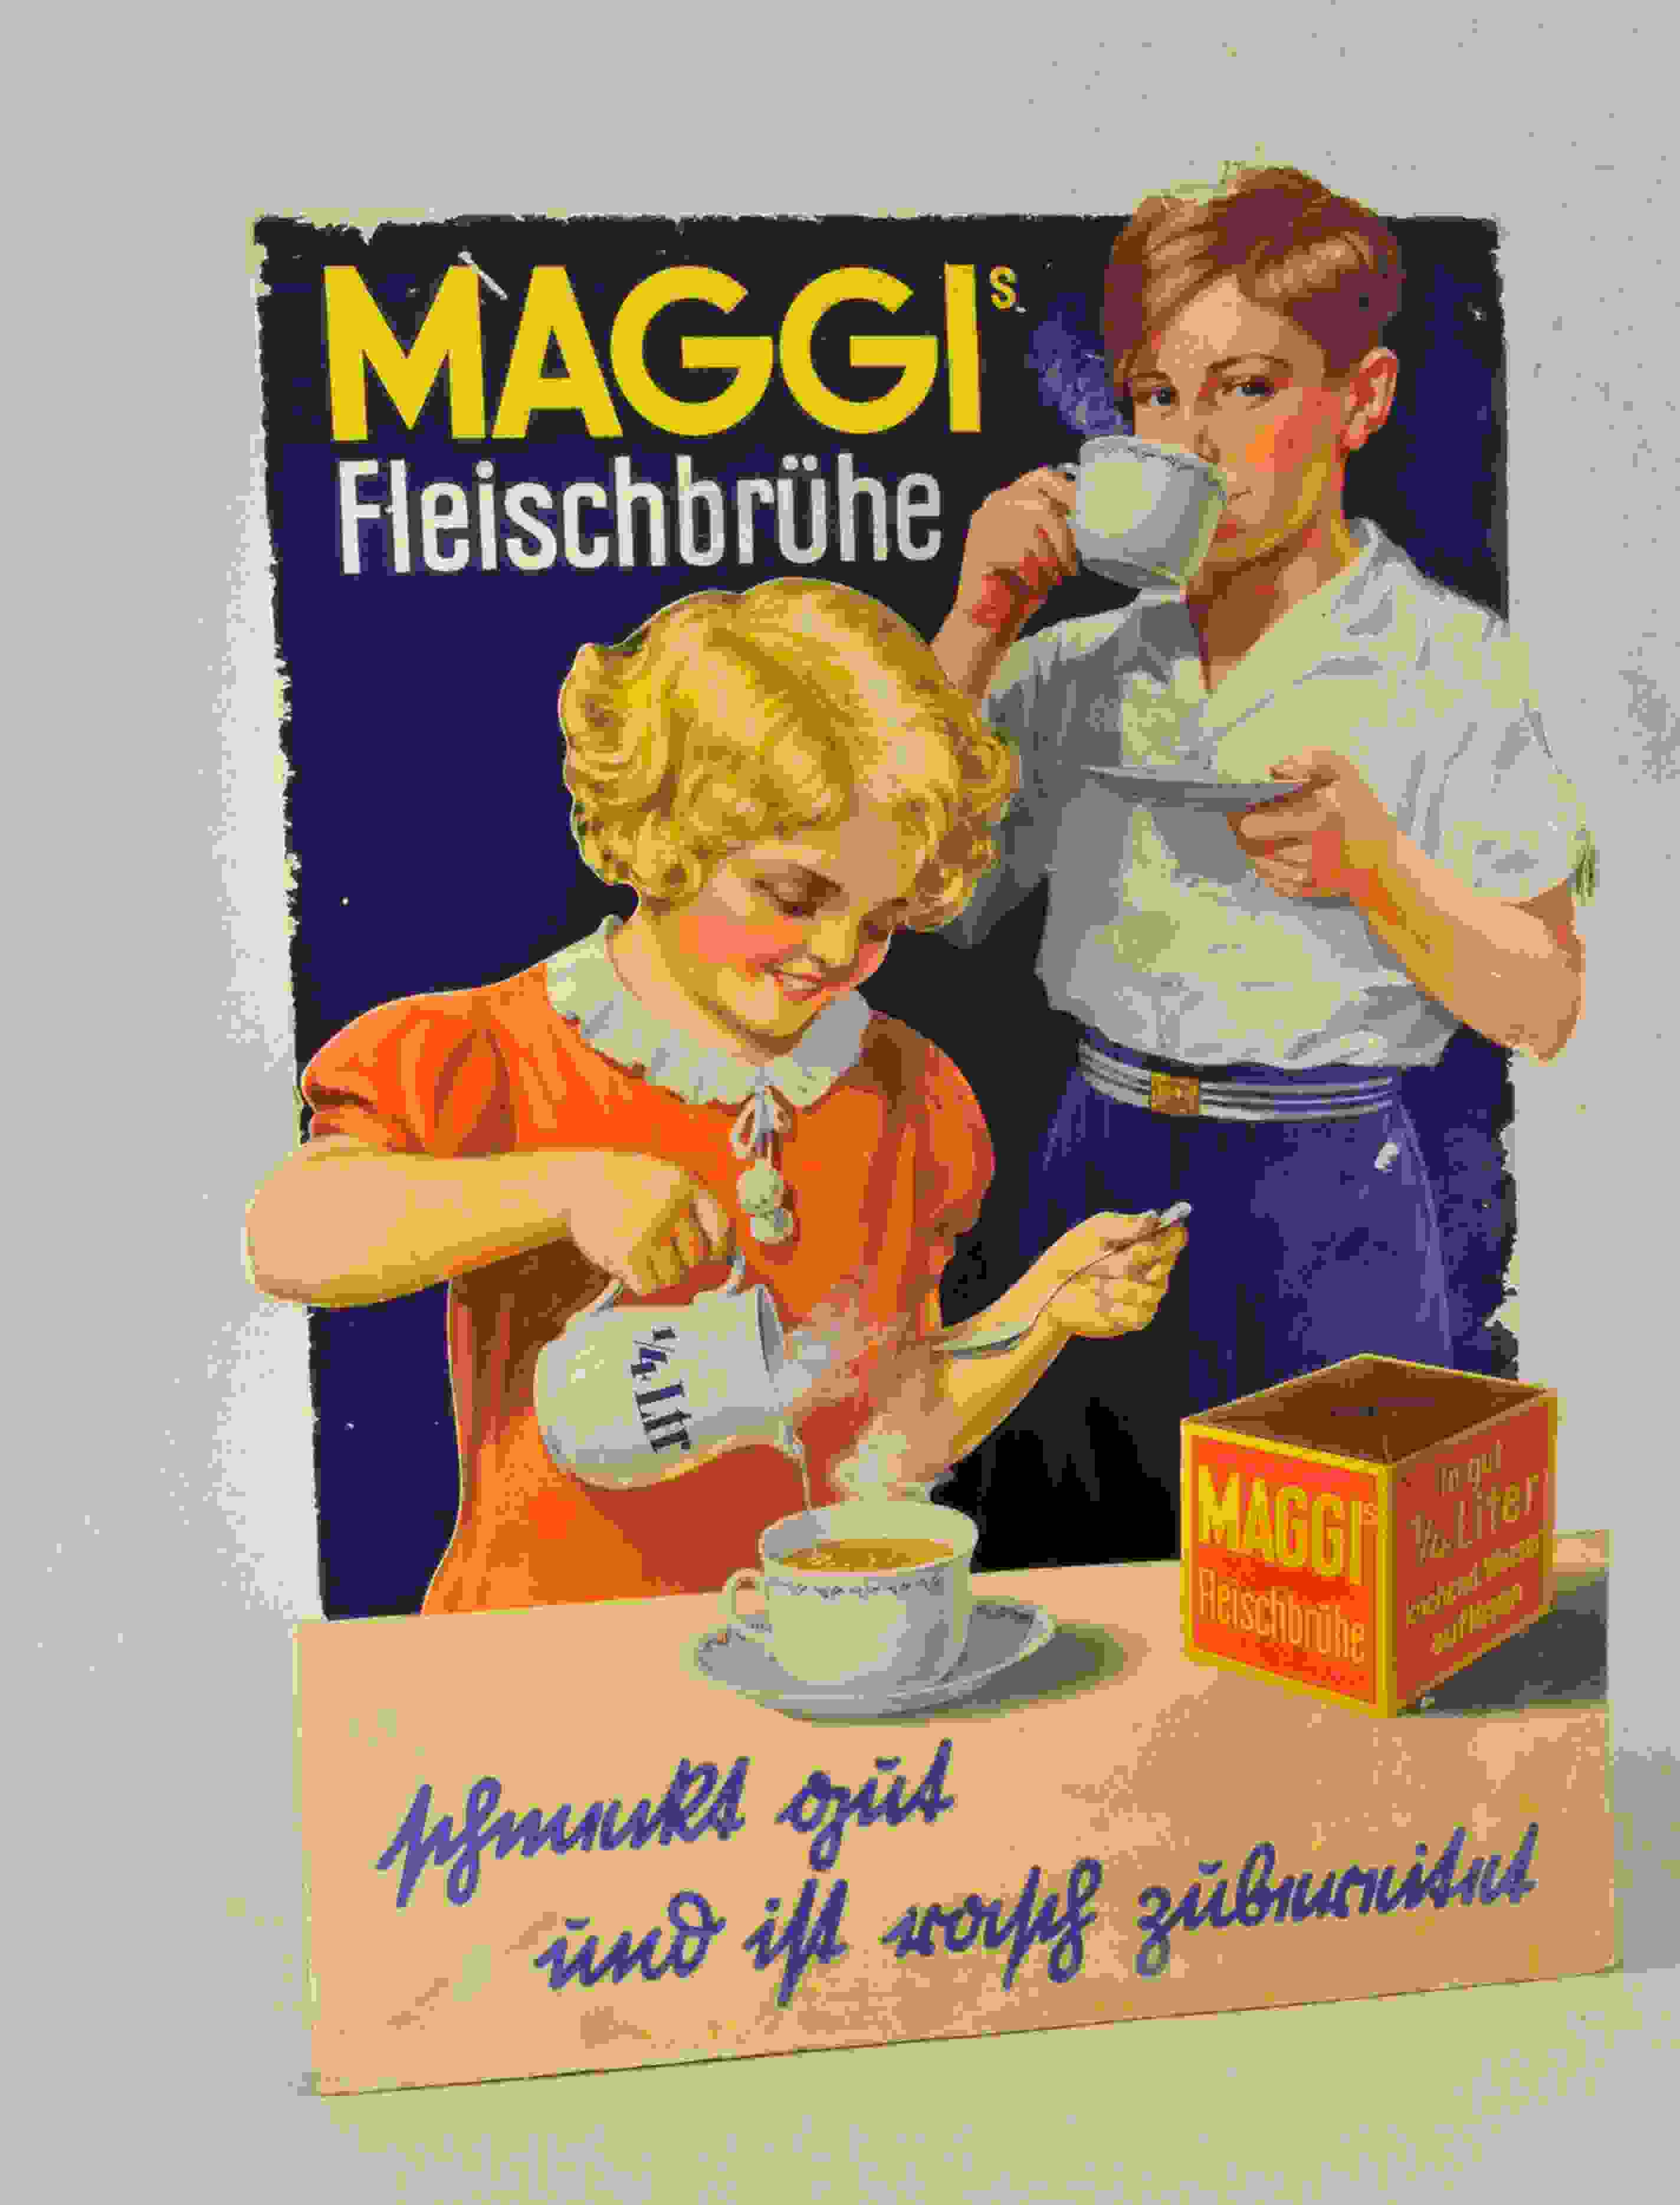 Maggi's Fleischbrühe 